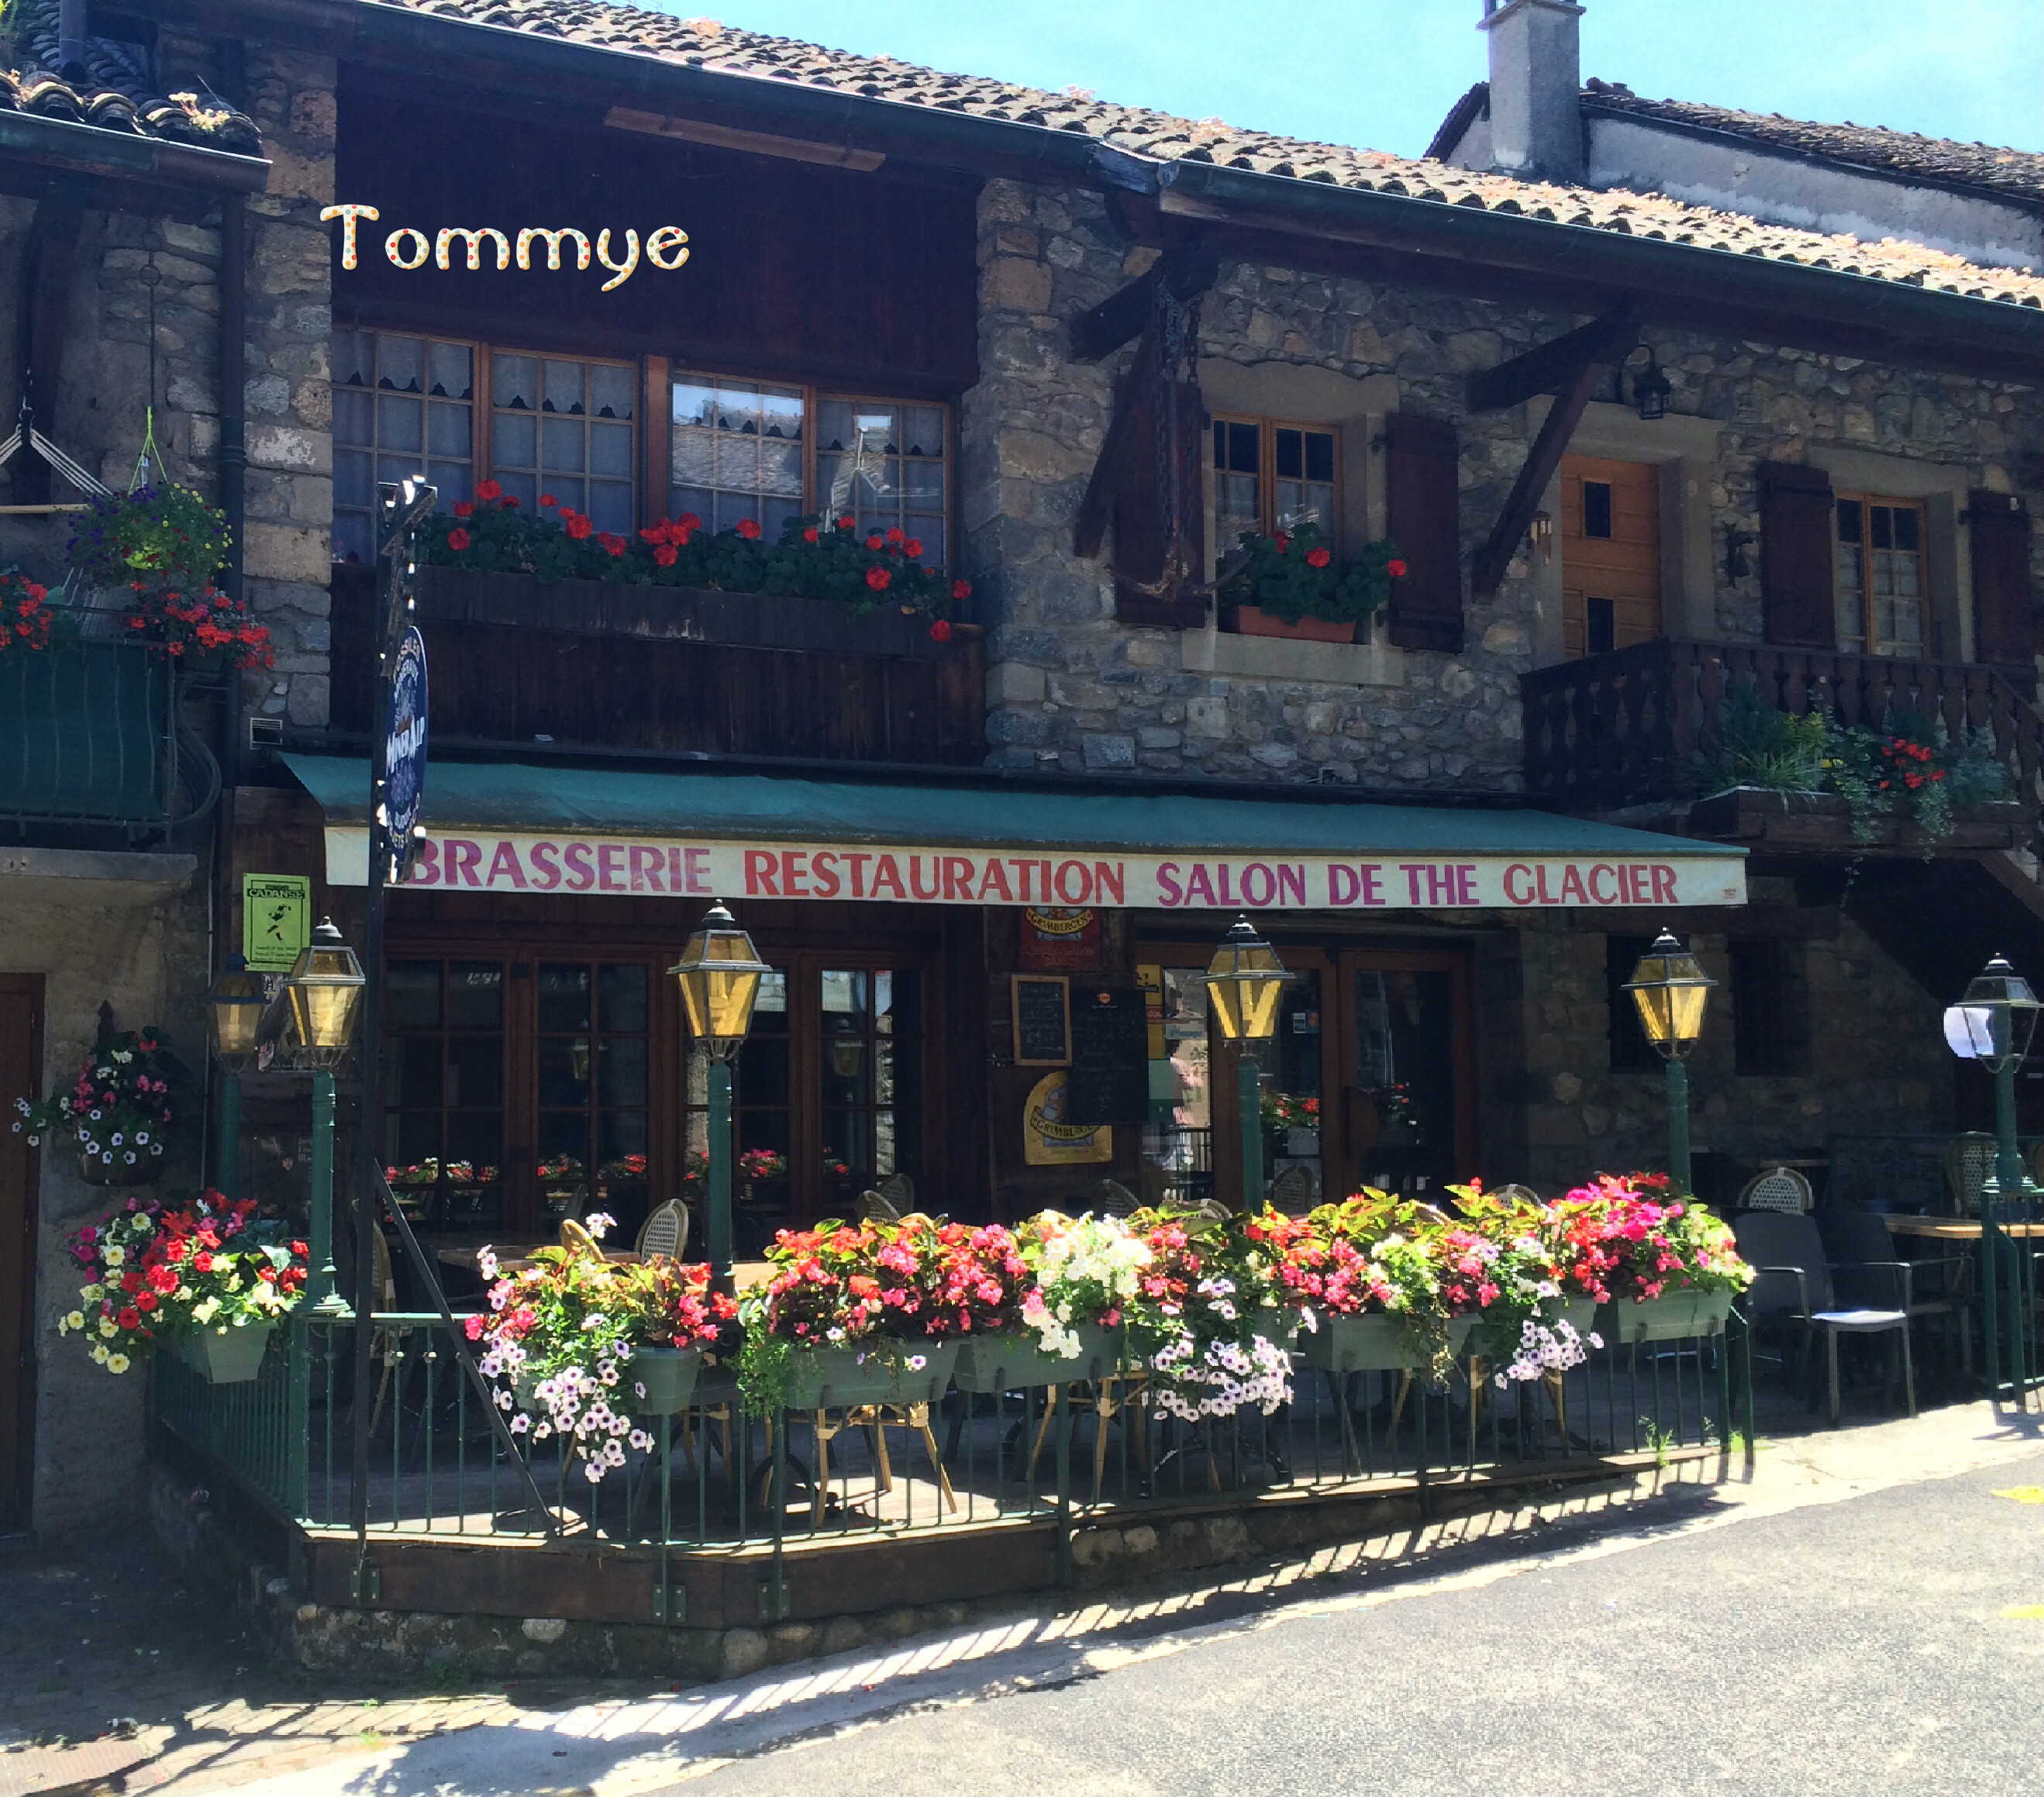 在洛桑附近还有一个法国小镇伊瓦尔(Yviore)，伊瓦尔是一个浪漫风情的鲜花小镇，房屋全是用石头砌成